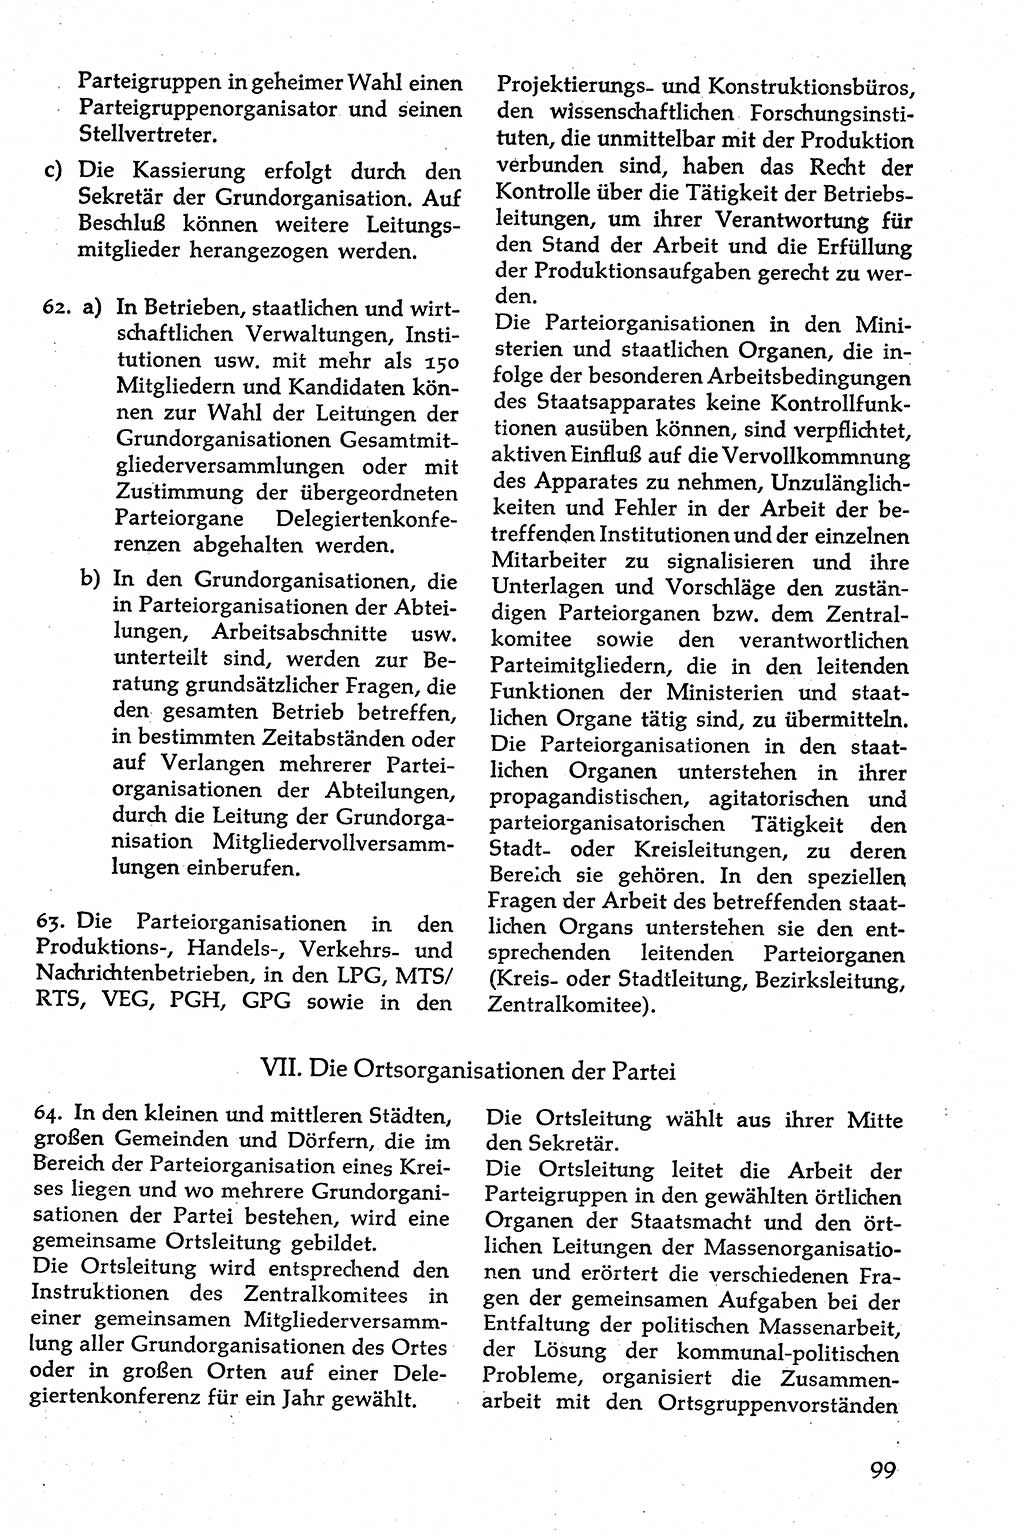 Volksdemokratische Ordnung in Mitteldeutschland [Deutsche Demokratische Republik (DDR)], Texte zur verfassungsrechtlichen Situation 1963, Seite 99 (Volksdem. Ordn. Md. DDR 1963, S. 99)